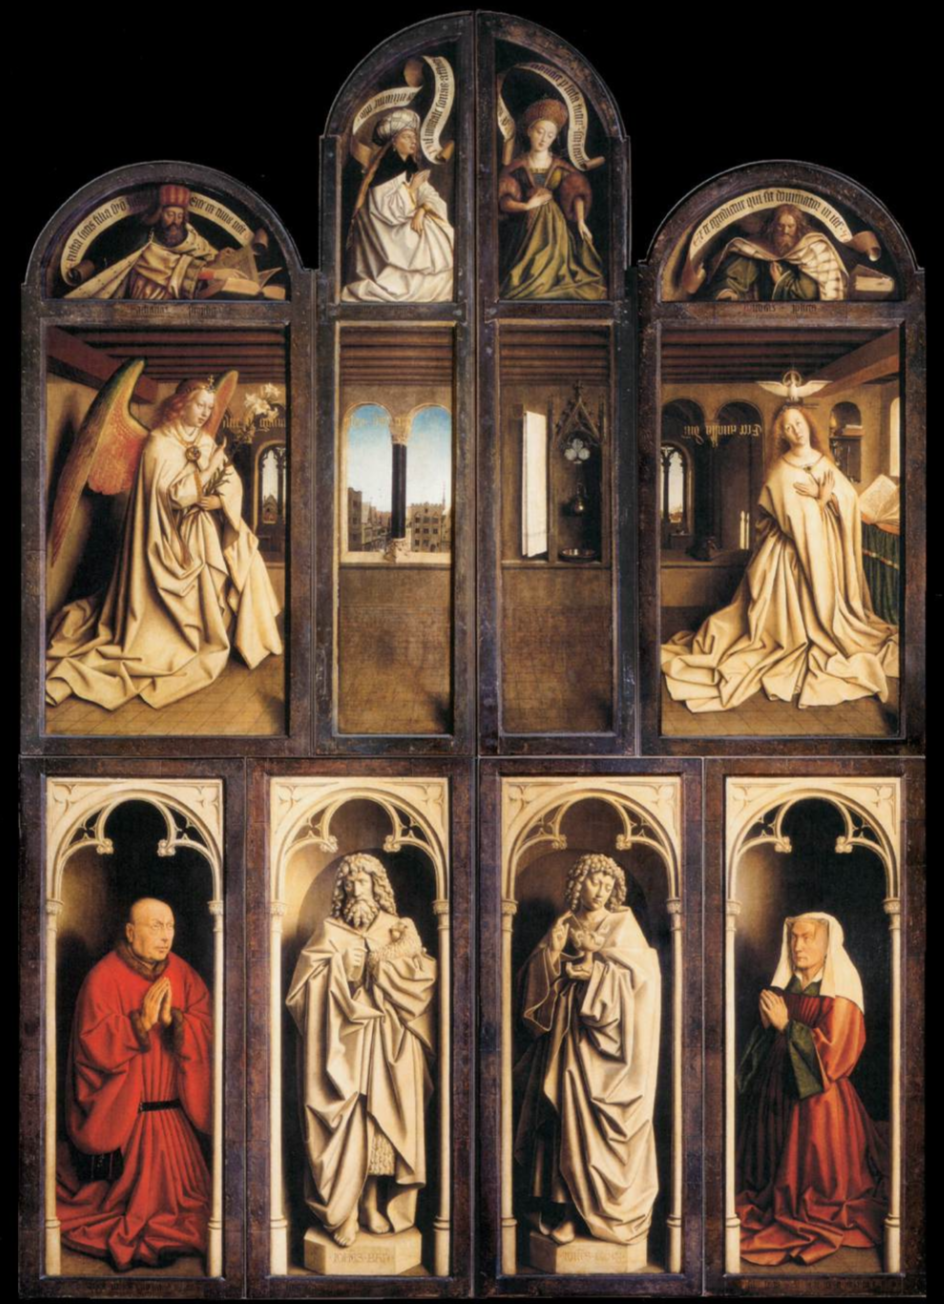  'Sacrifice of the Lamb by artist Jan van Eyck,